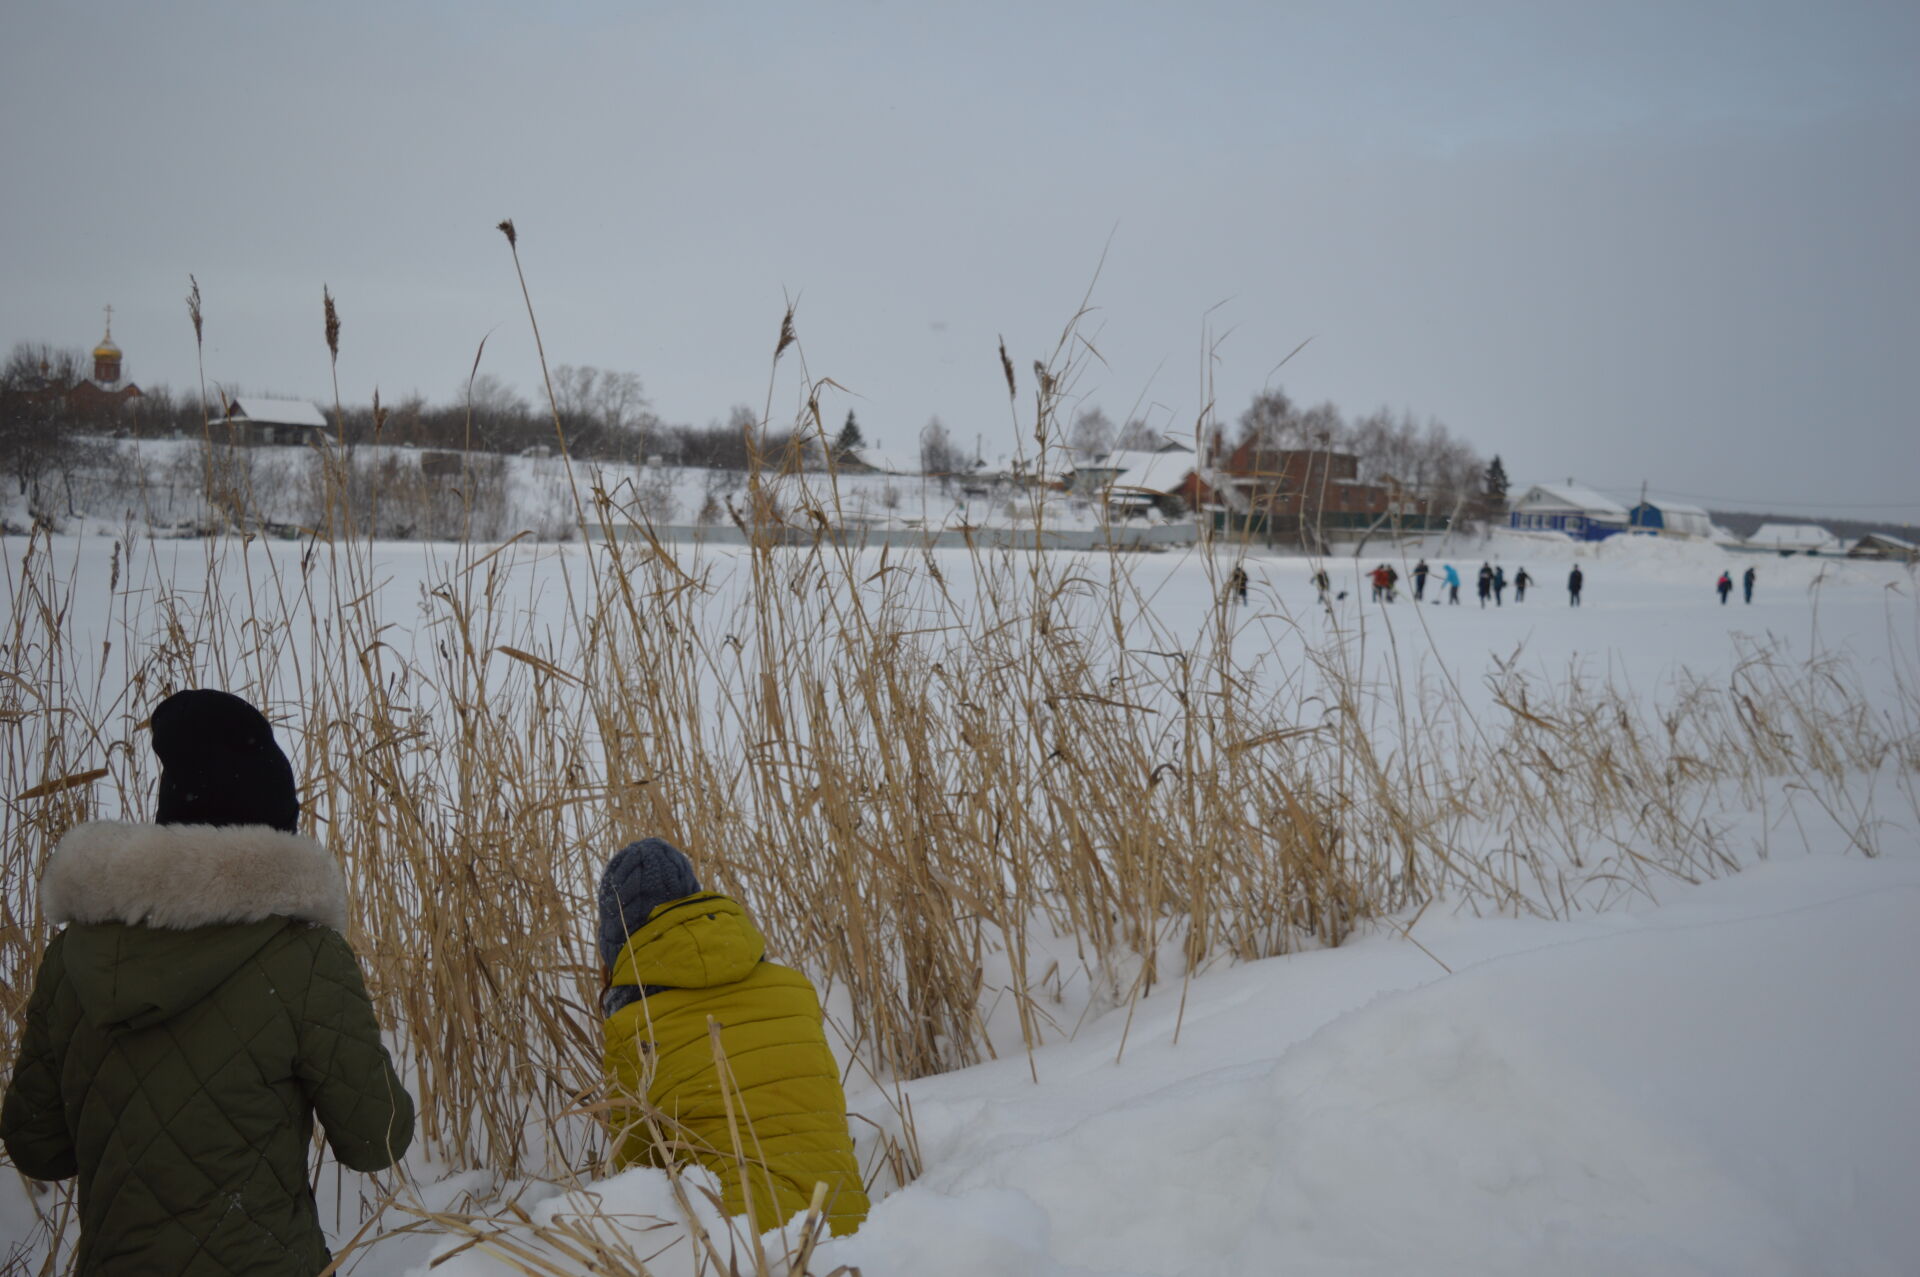 Сегодня на Школьном озере в Камском Устье прошла традиционная зимняя акция по сохранению фауны водоема